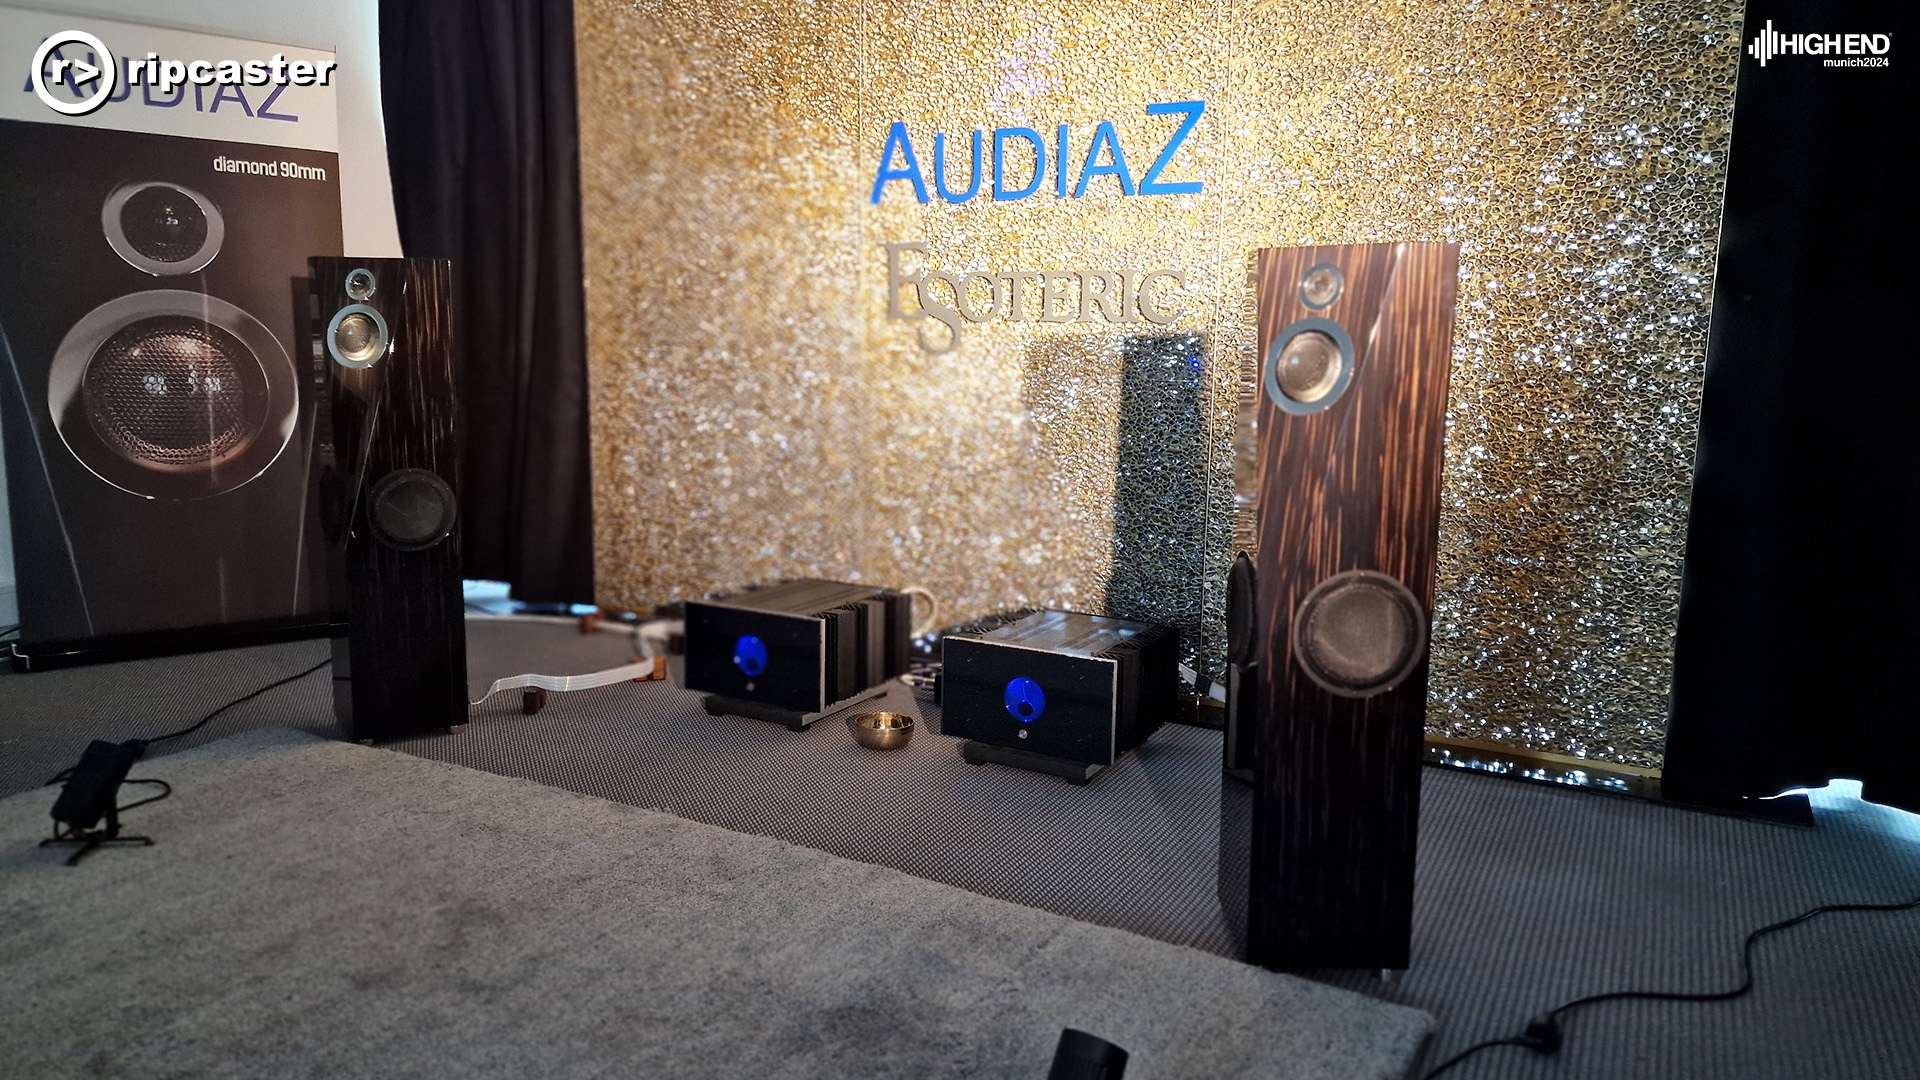 Audiaz.  Floorstanding speakers with HiFi equipment between.